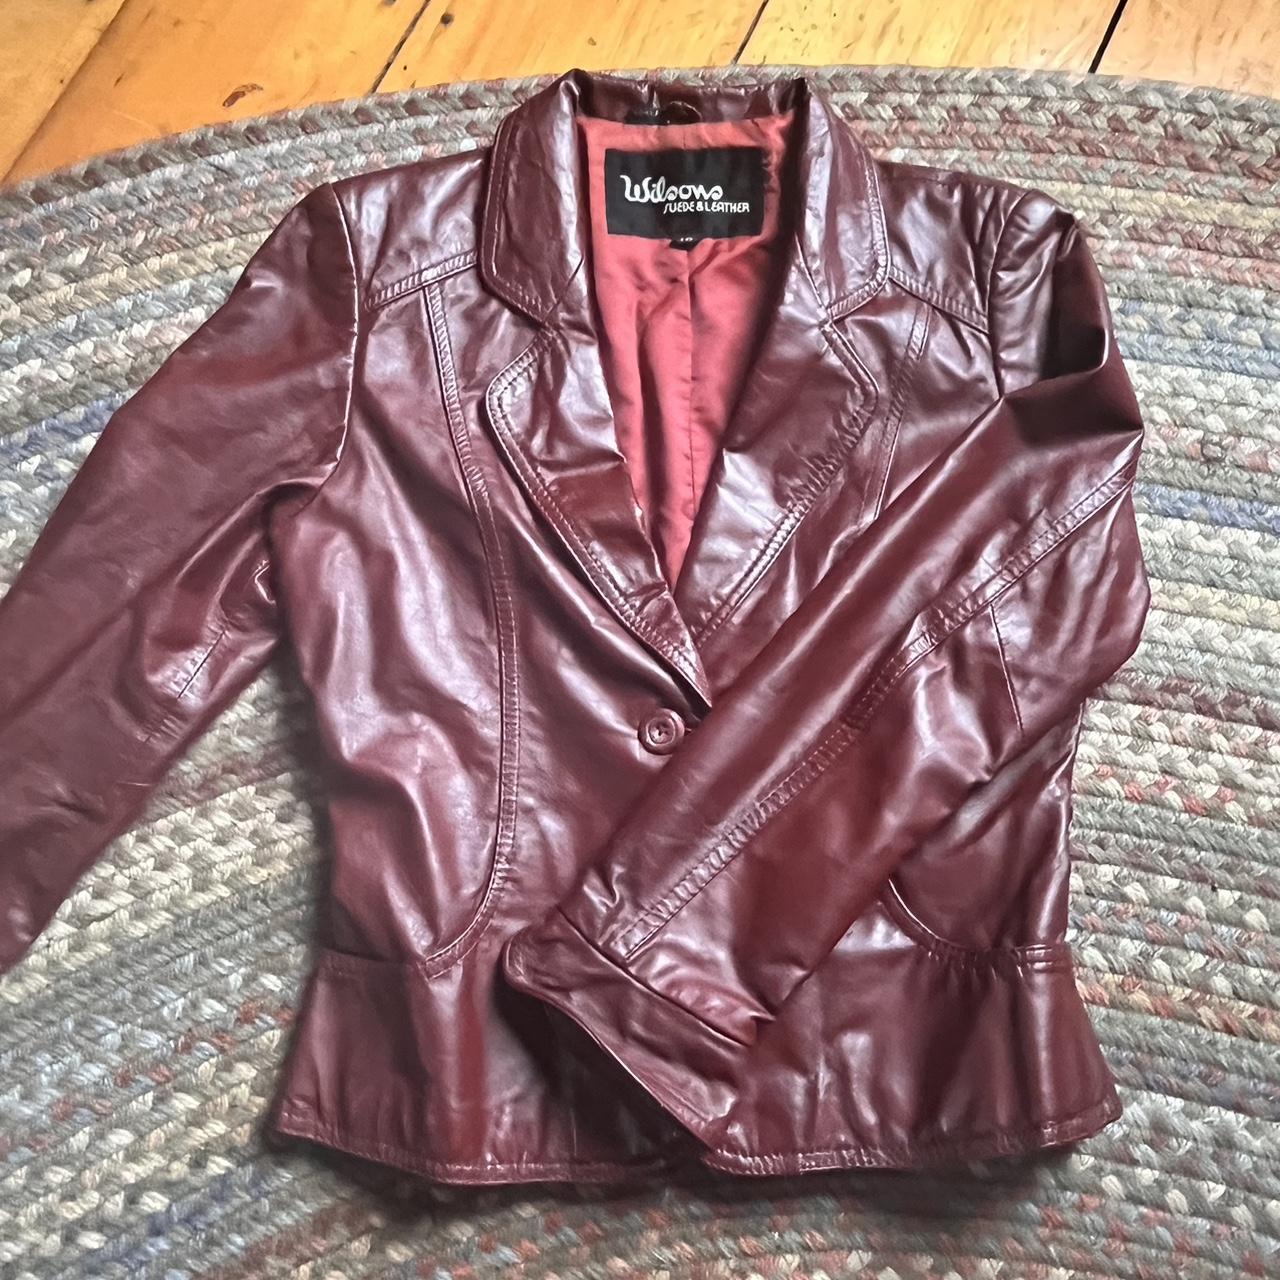 Wilson Leather Deep Red Vintage Jacket Size... - Depop